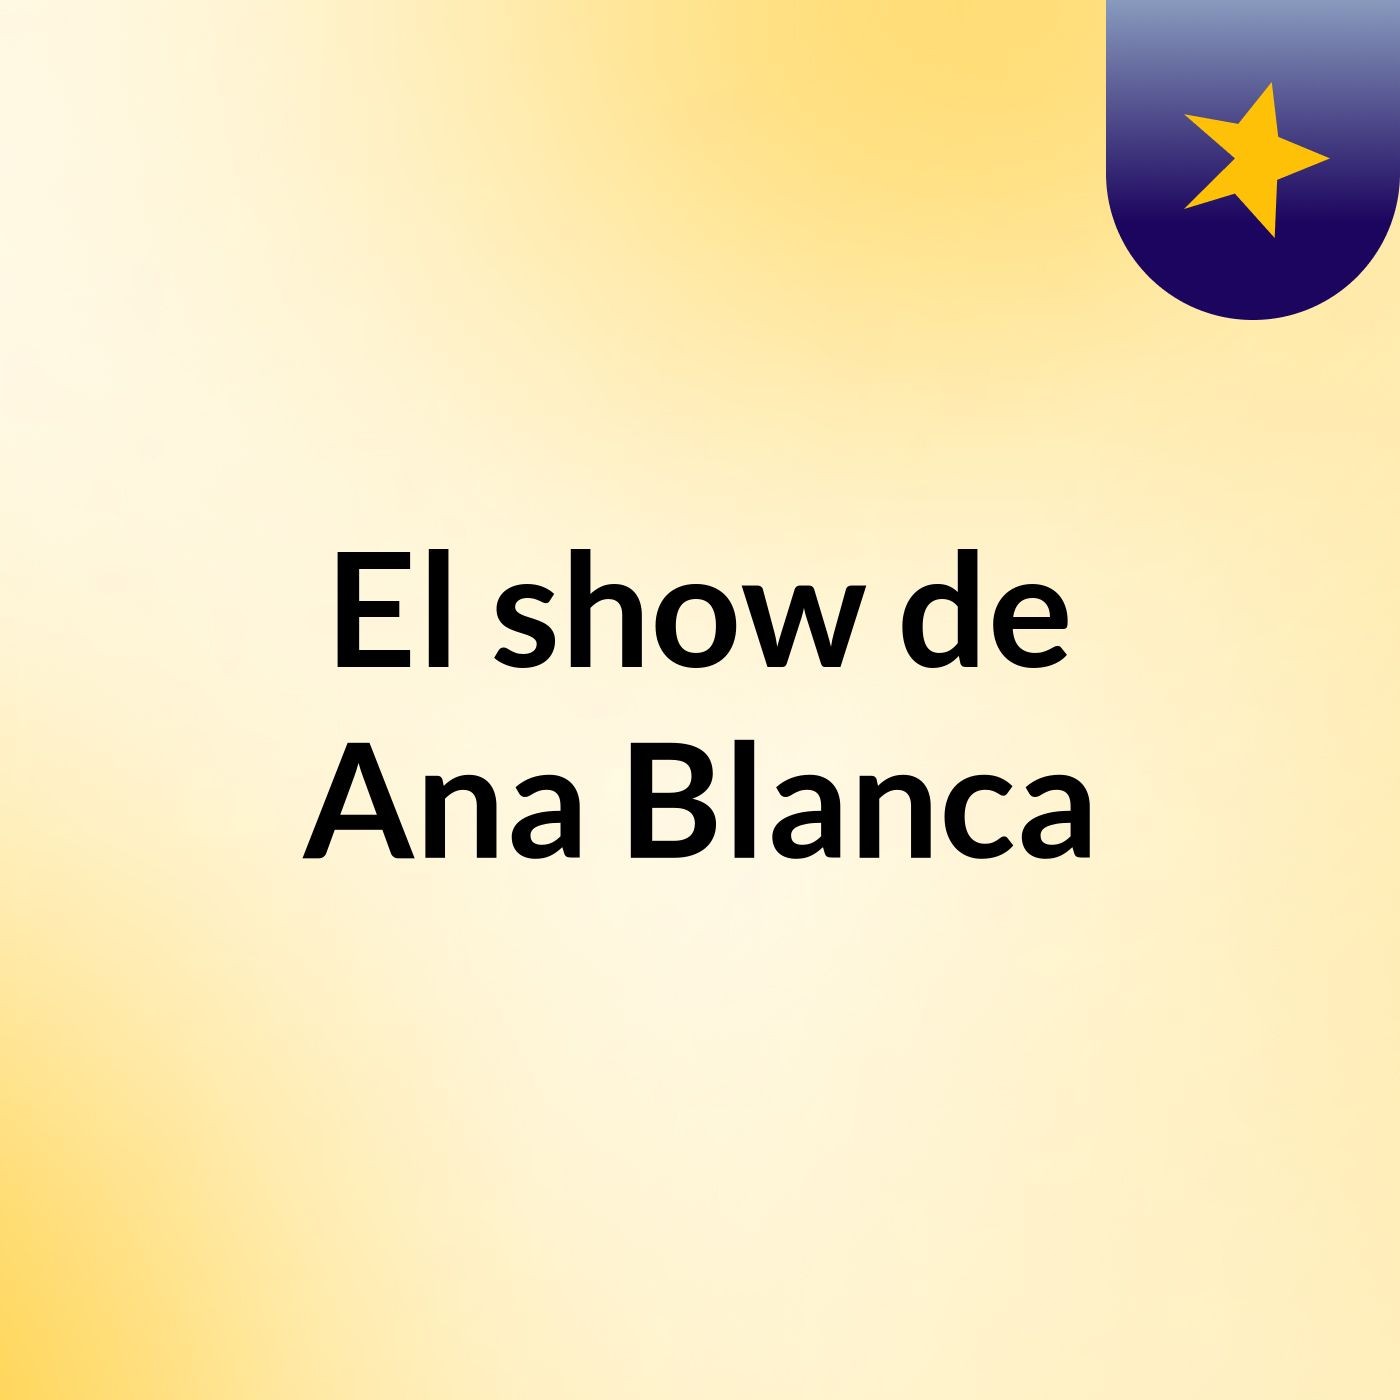 El show de Ana Blanca